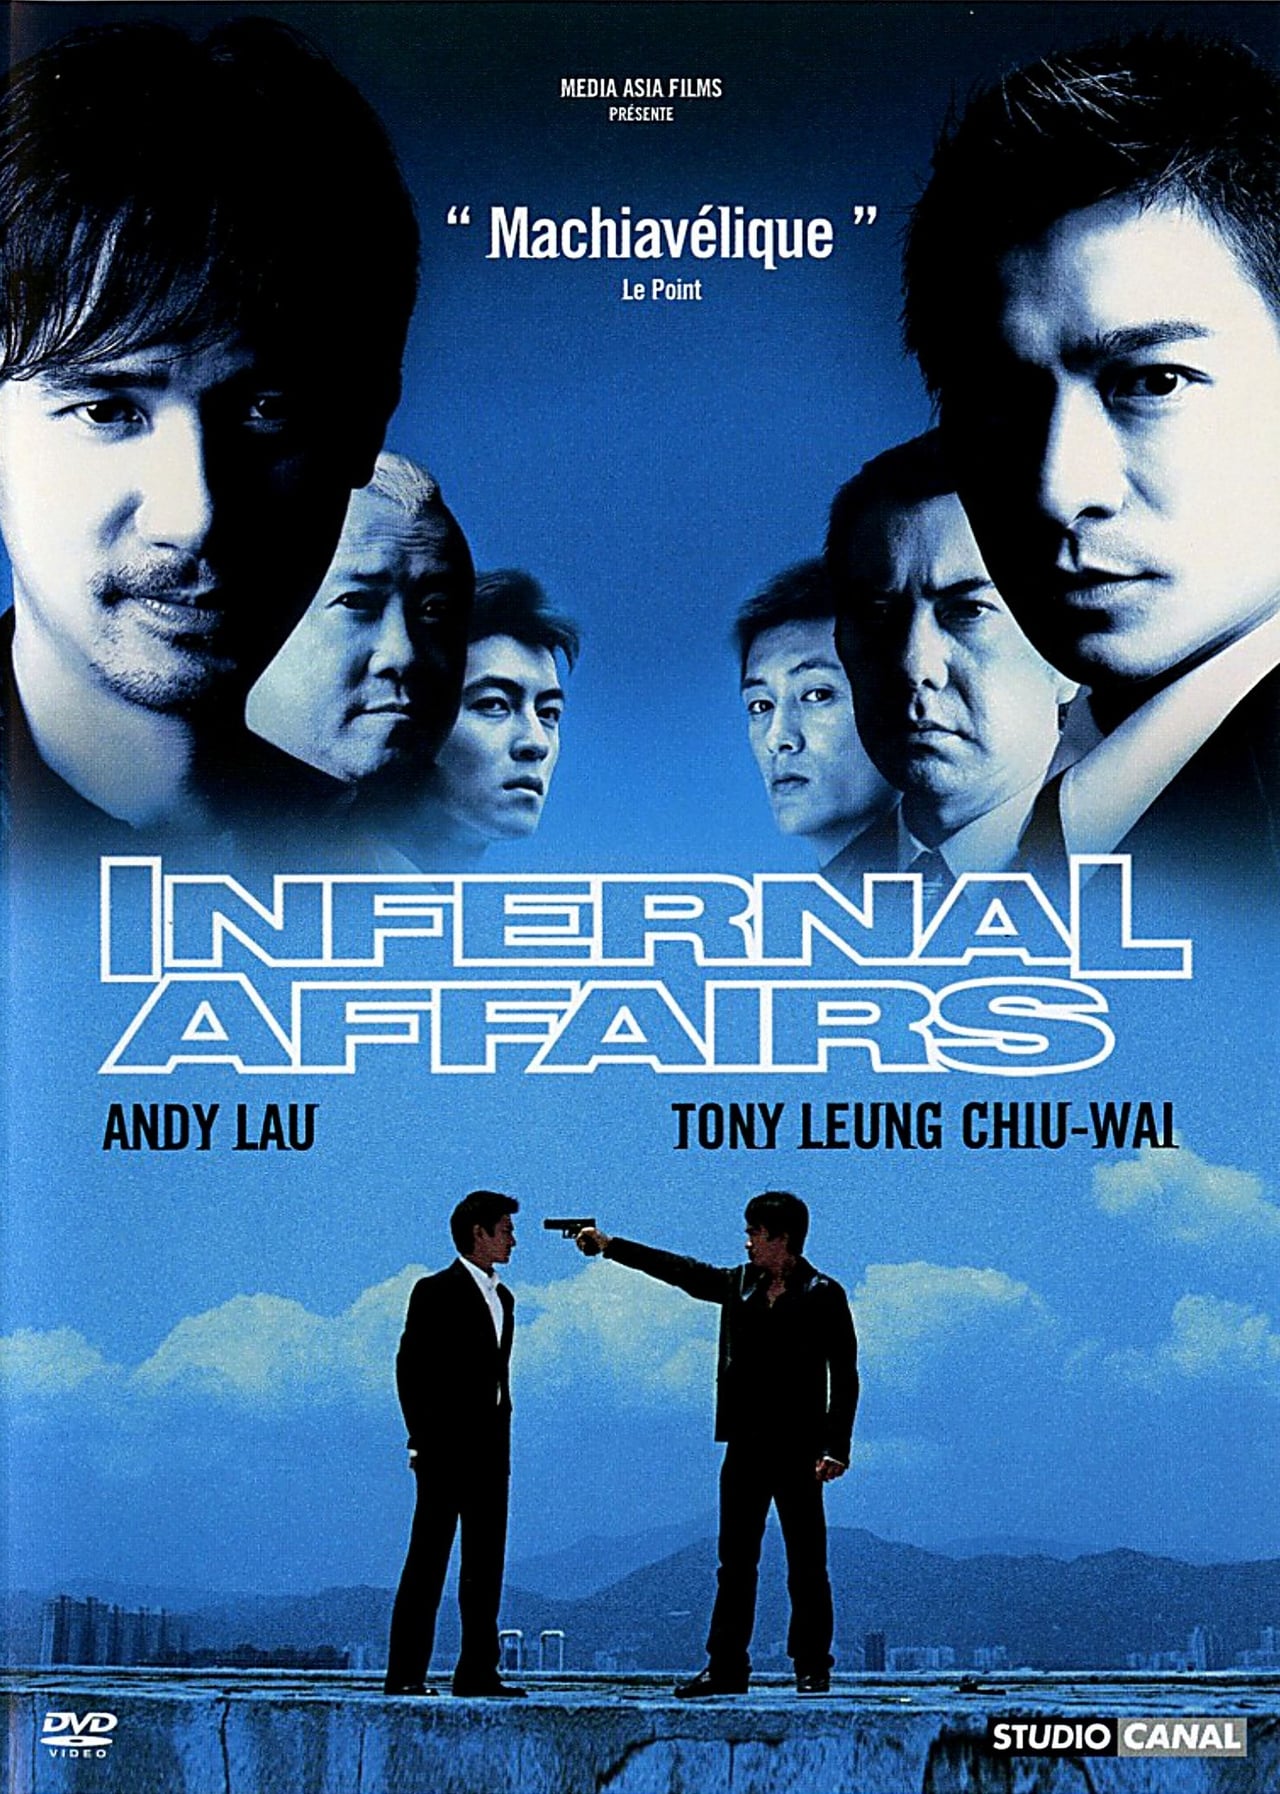 Infernal Affairs (2002) 192Kbps 24Fps 48Khz 2.0Ch DVD Turkish Audio TAC